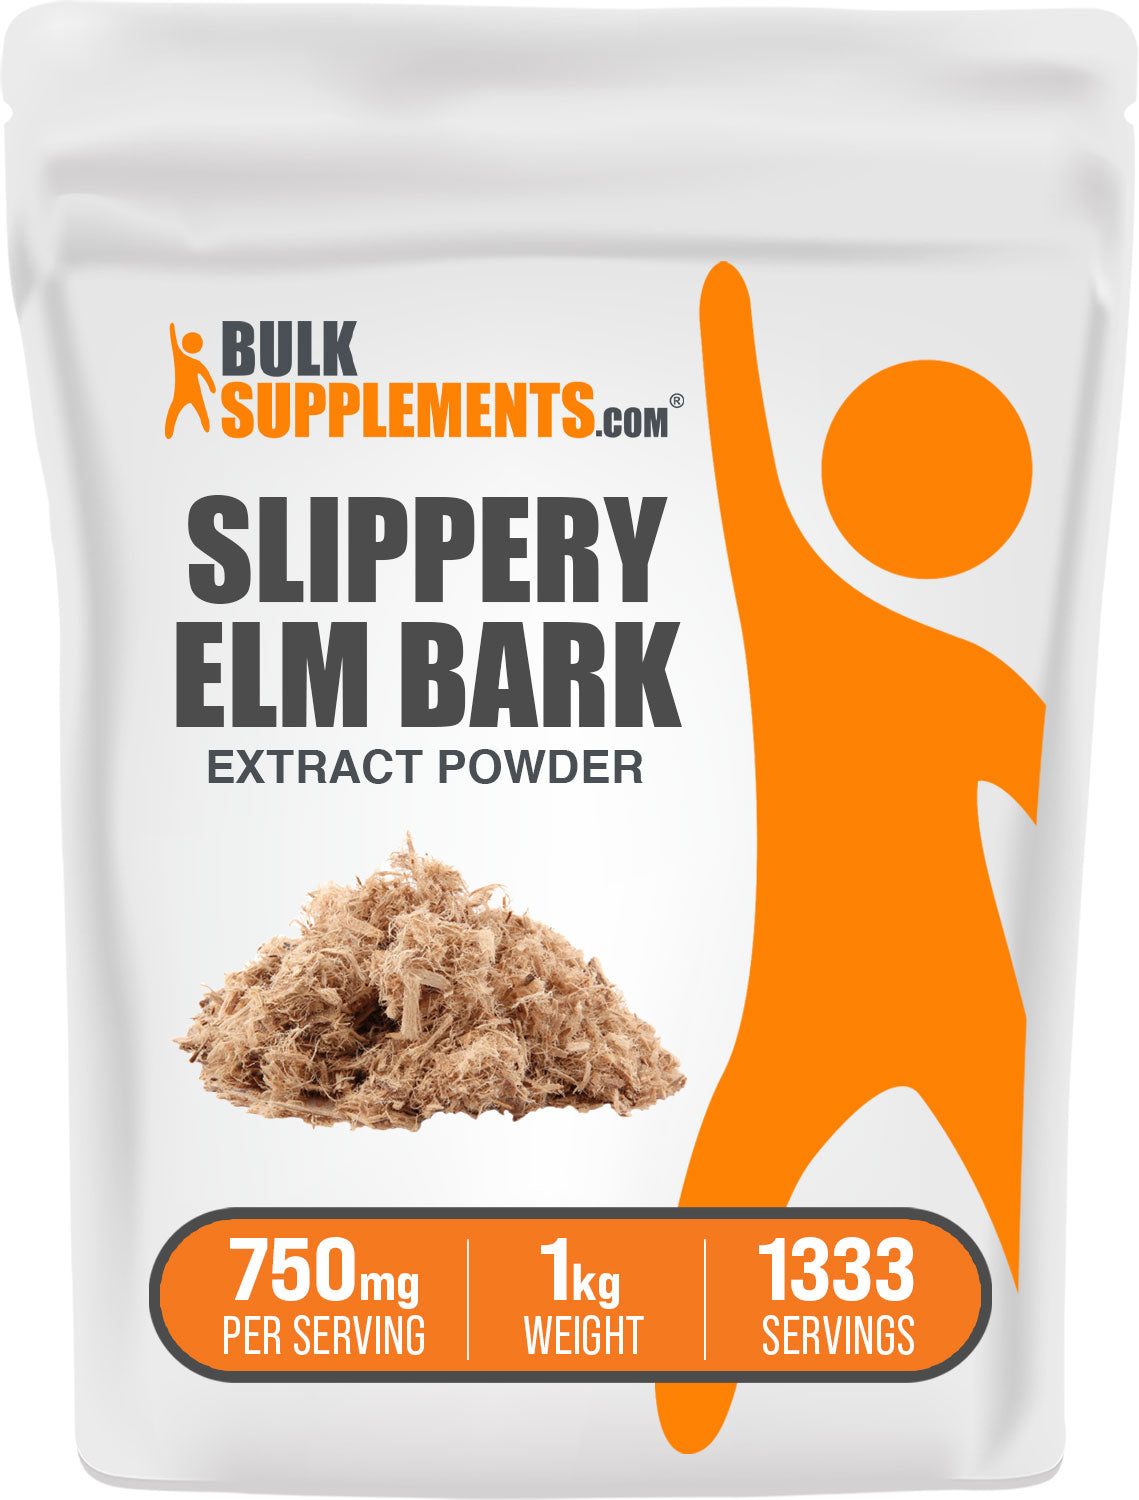 BulkSupplements.com Slippery Elm Bark Extract Powder 1kg Bag